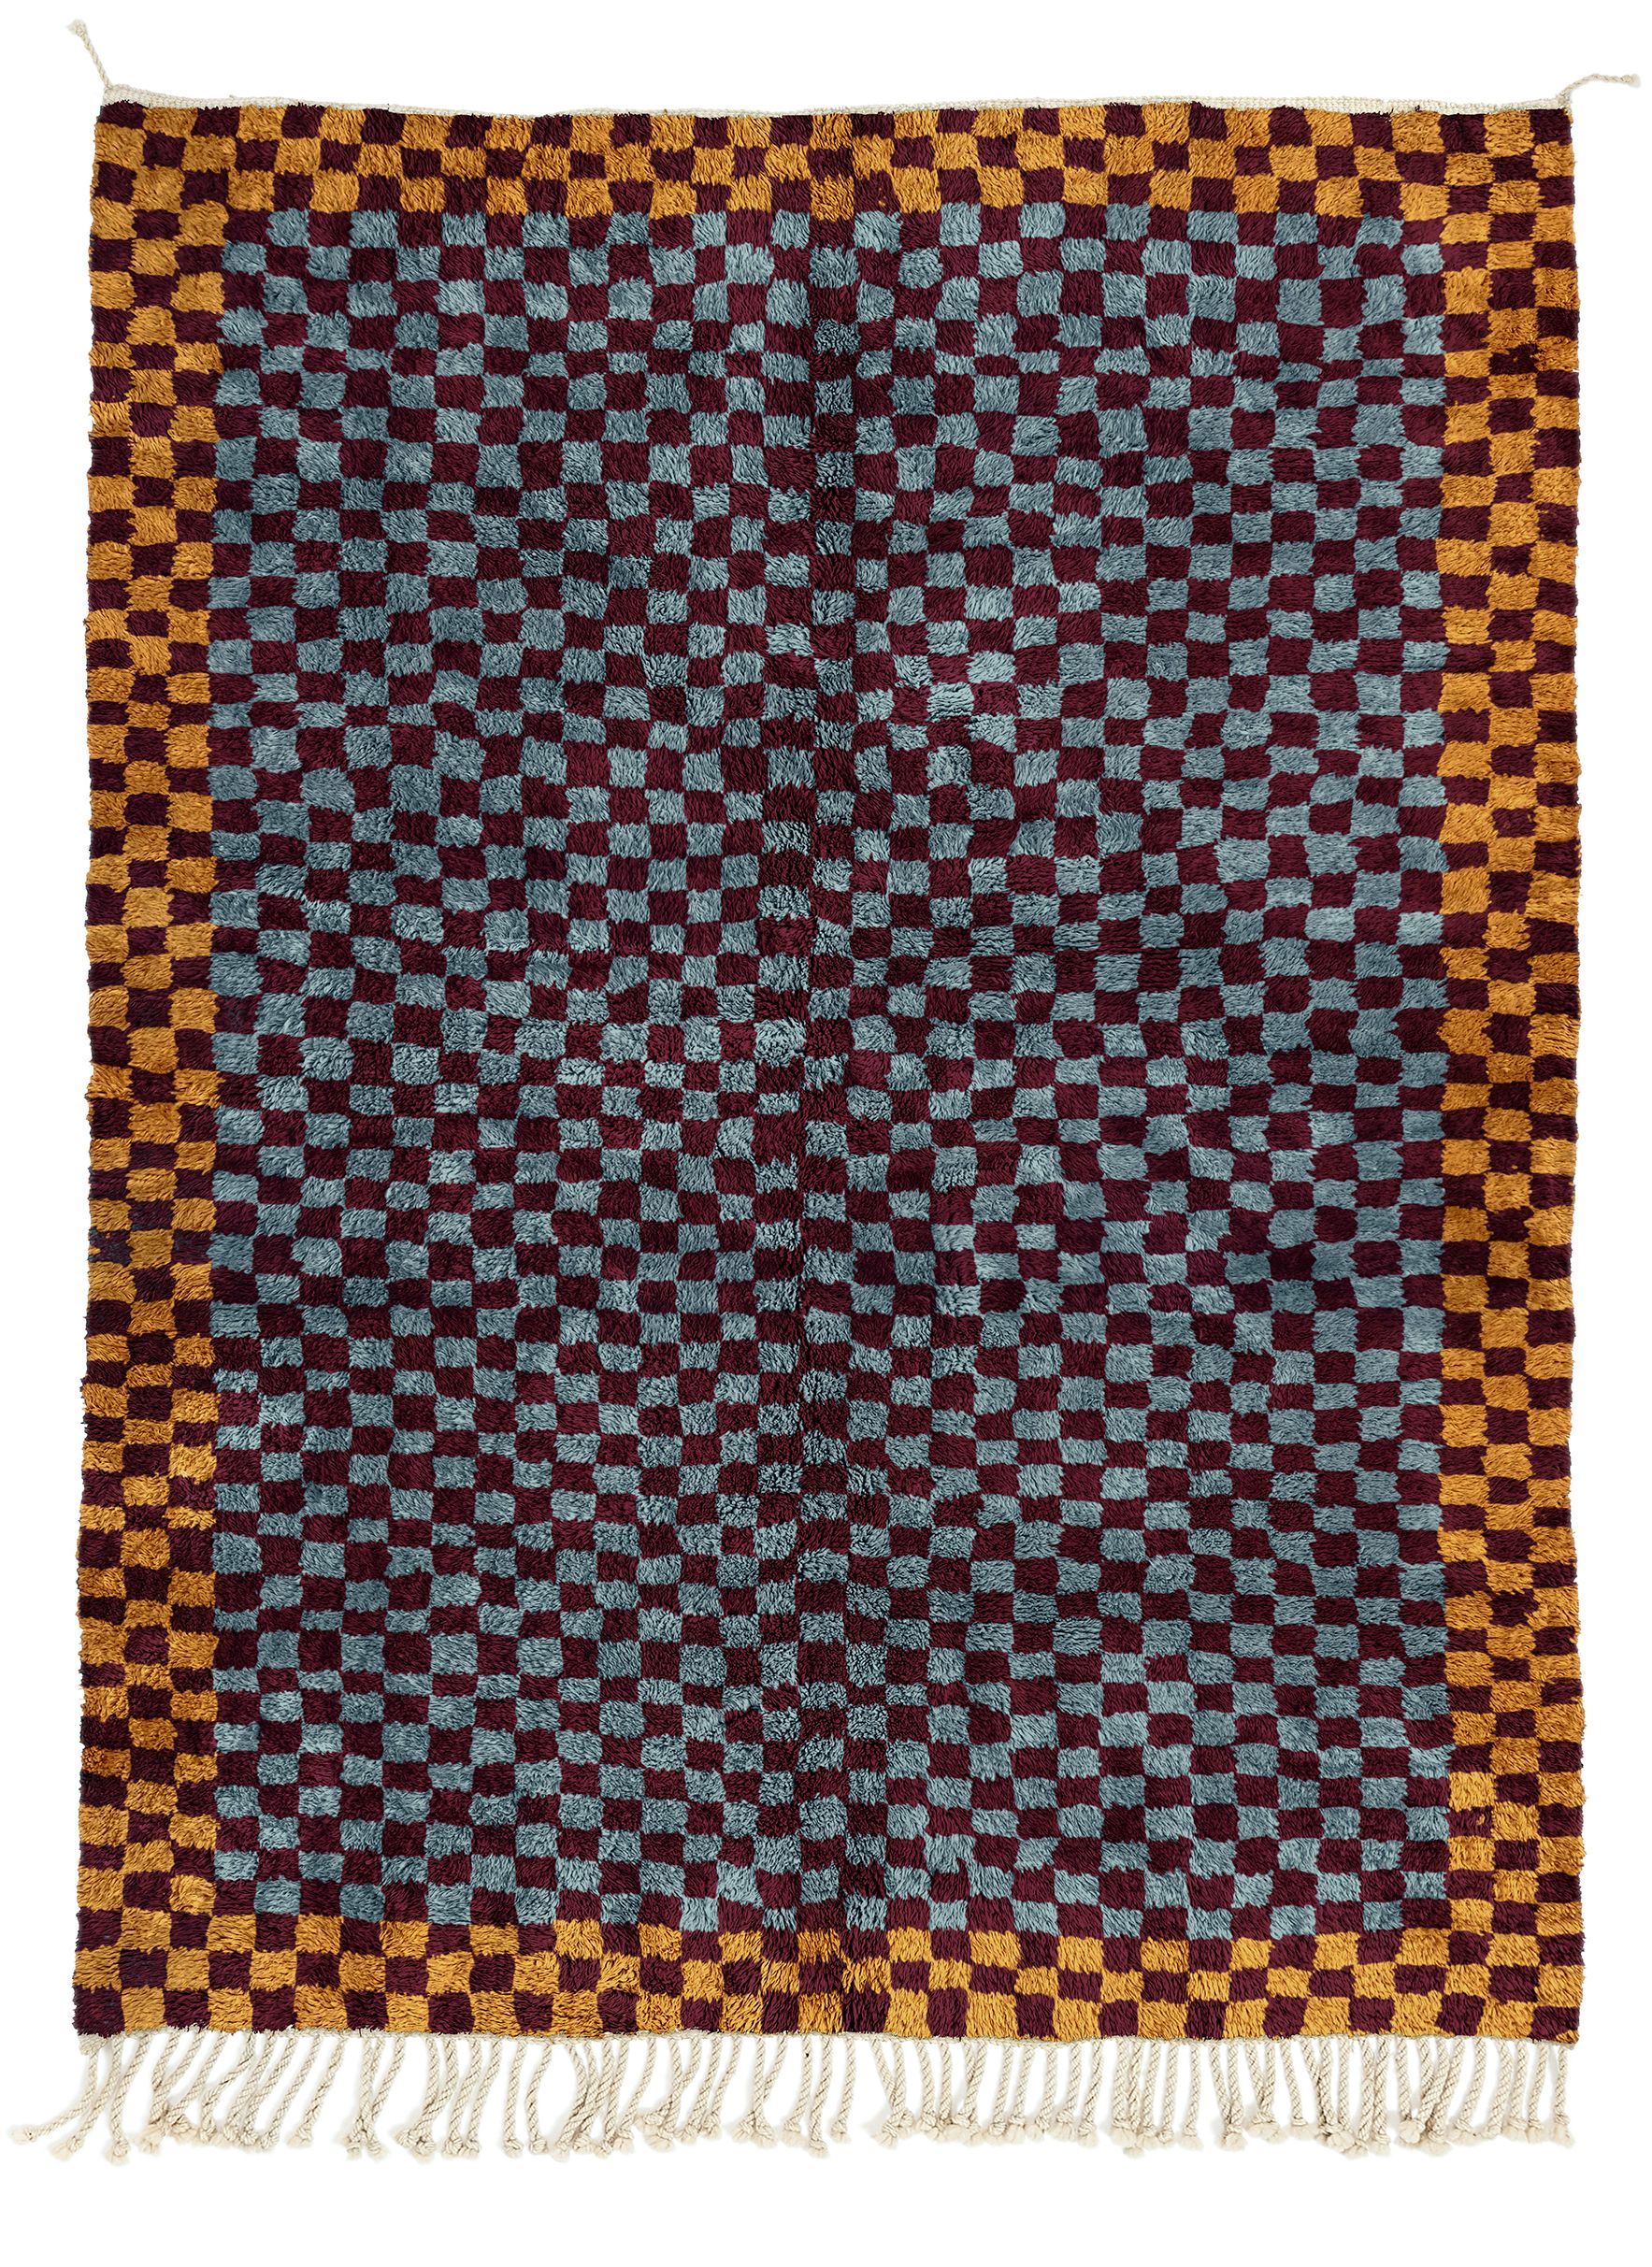 Louis Vuitton Monogram Tile Crop Top Blue. Size M0